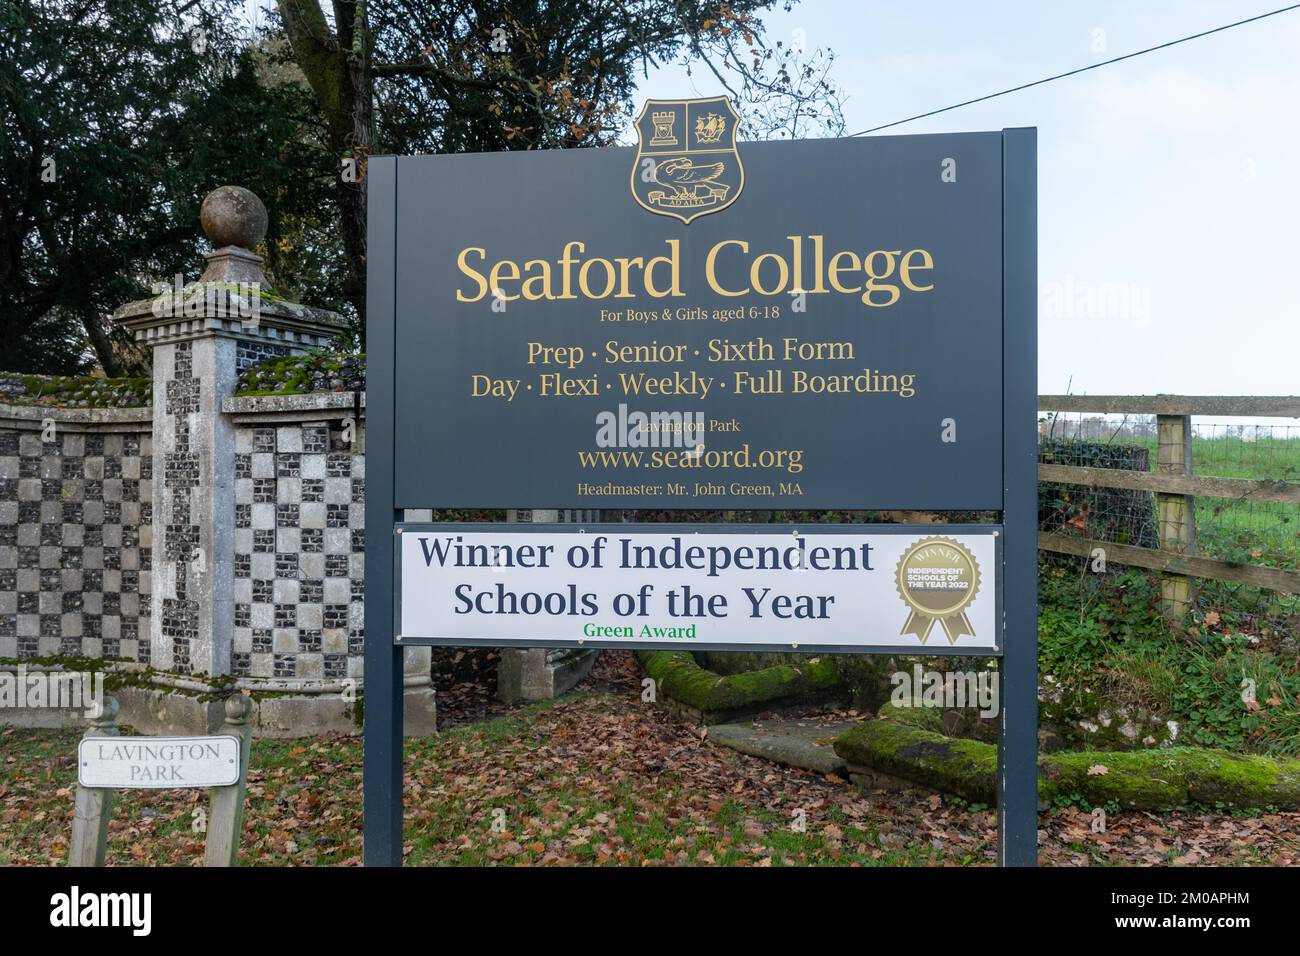 Seaford College, una escuela de día y internado coeducativa independiente en East Lavington, cerca de Petworth, West Sussex, Inglaterra, Reino Unido Foto de stock